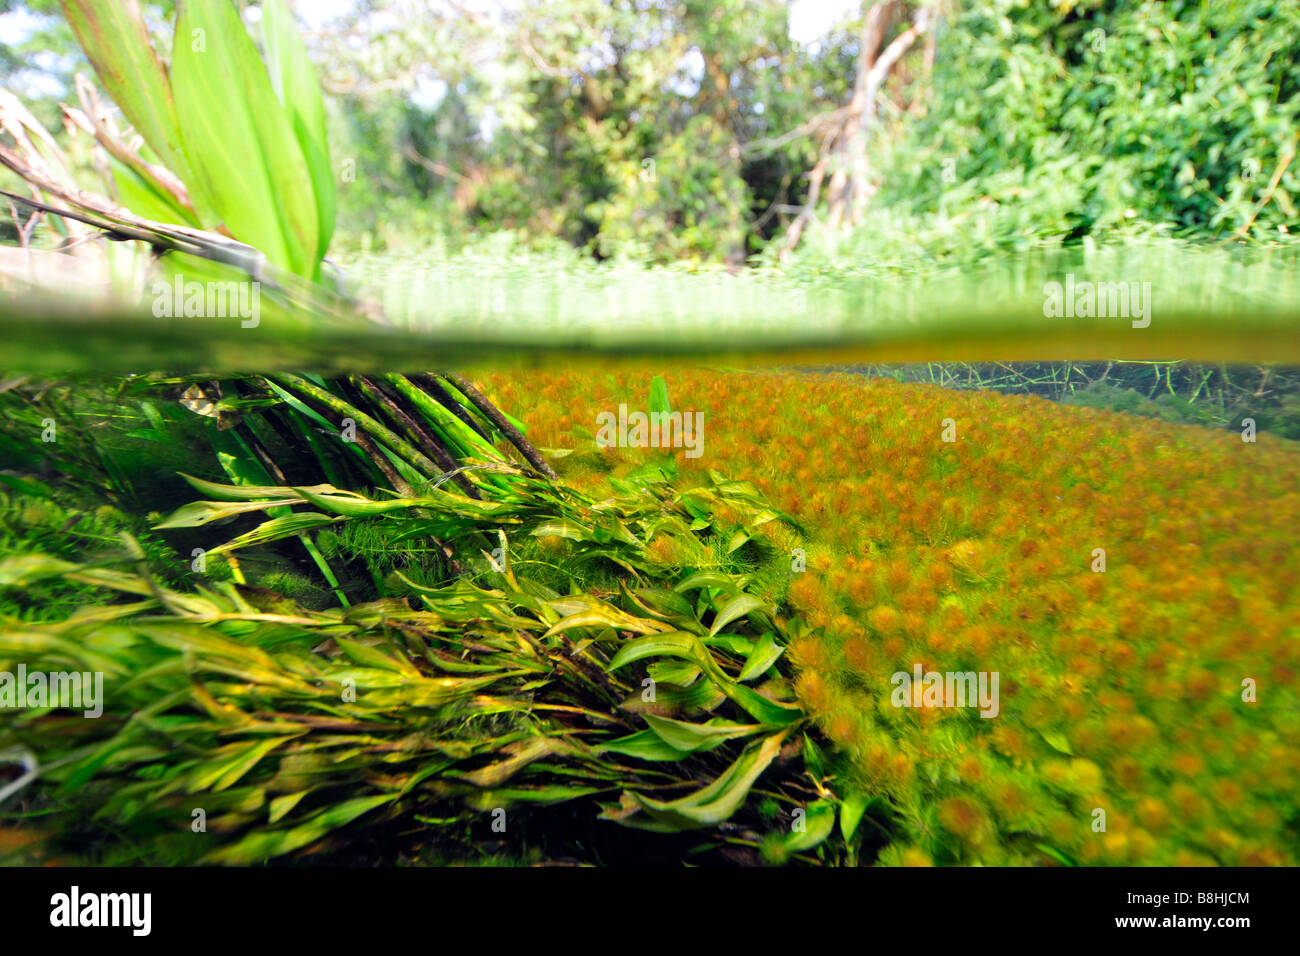 Imagen dividida de la exuberante vegetación encima y debajo del agua del río Sucuri Bonito, Mato Grosso do Sul, Brasil Foto de stock